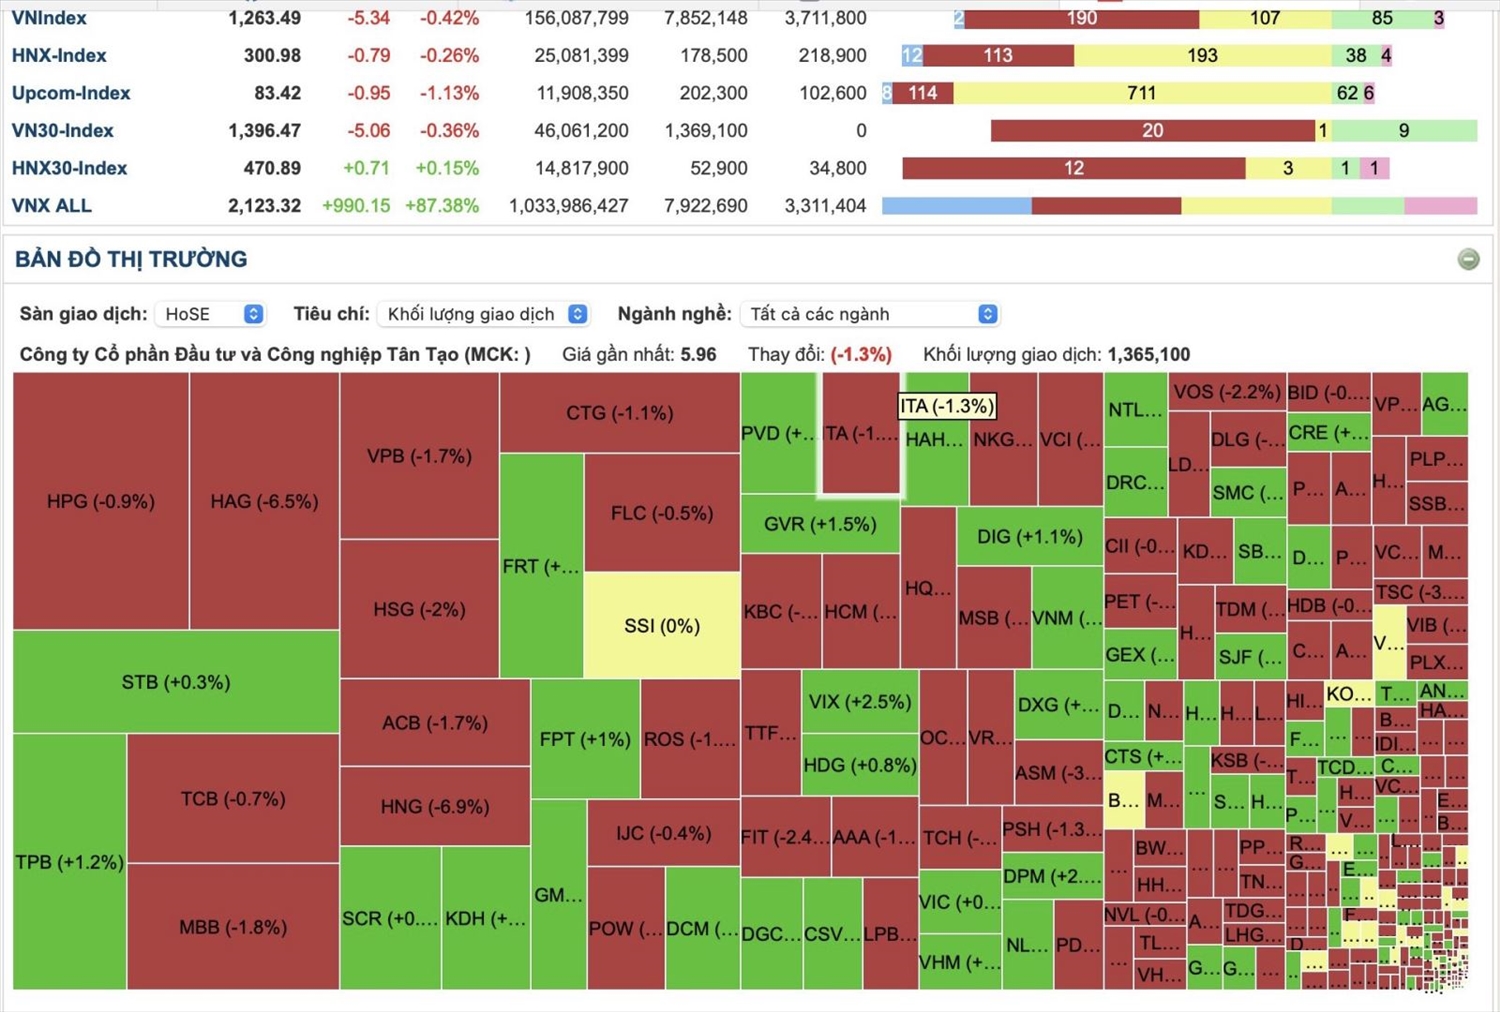 Bảng chỉ số các mã chứng khoán đầu ngành giảm giá khiến thị trường đỏ sàn trong phiên đầu tuần.